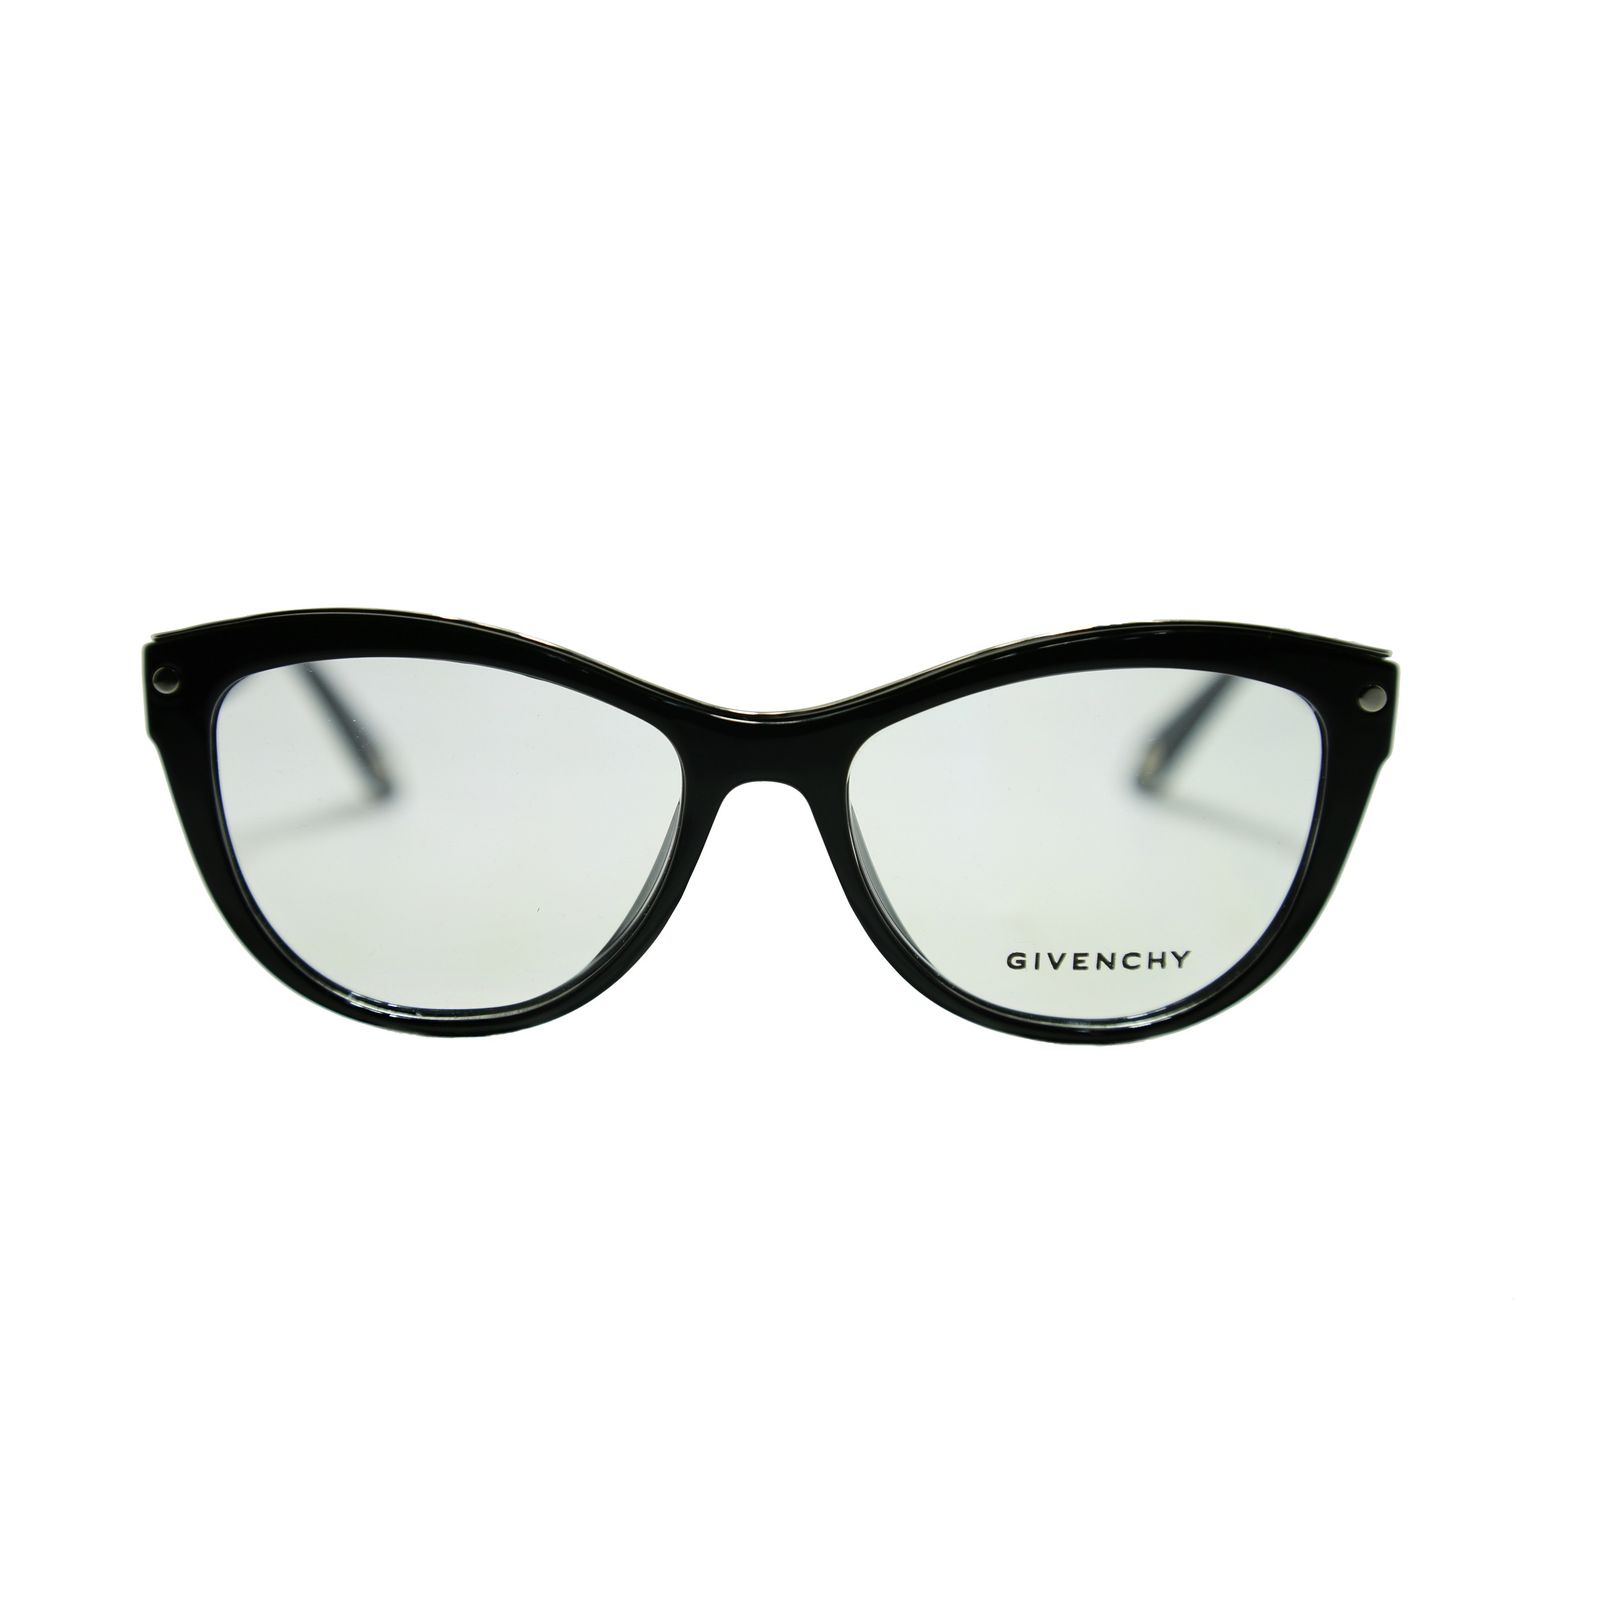 فریم عینک طبی زنانه ژیوانشی مدل vgv915 -  - 1